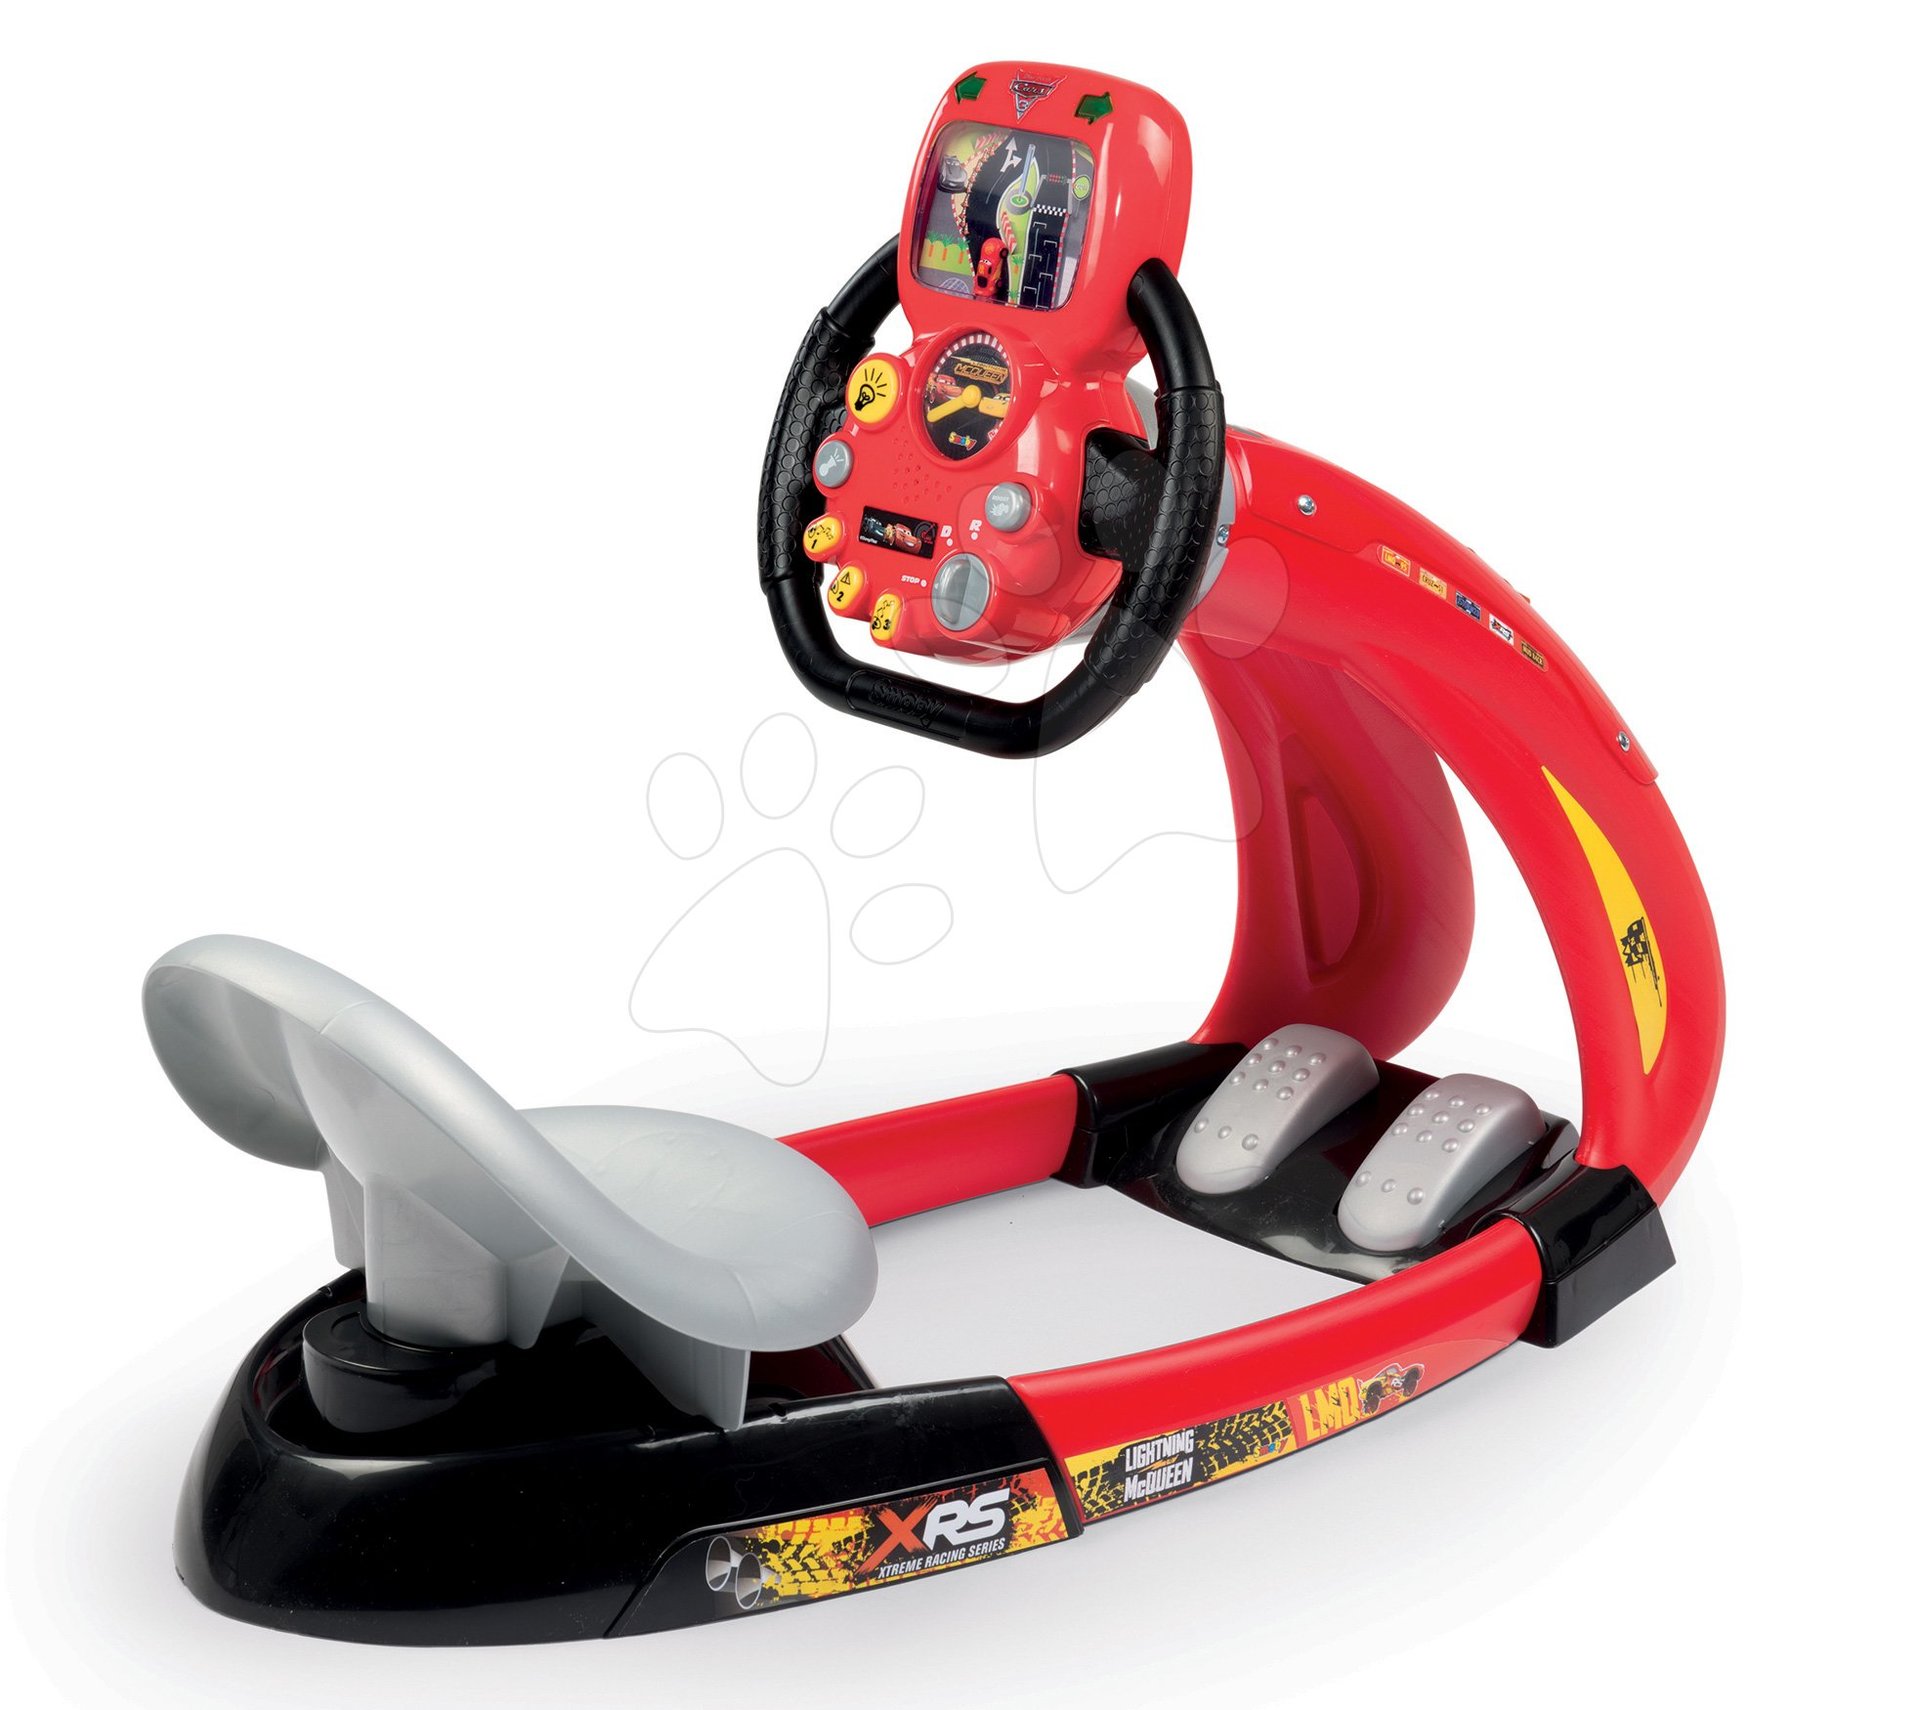 Trenažér pre deti - Trenažér Flash McQueen Cars XRS Smoby elektronický s pretekárskym simulátorom